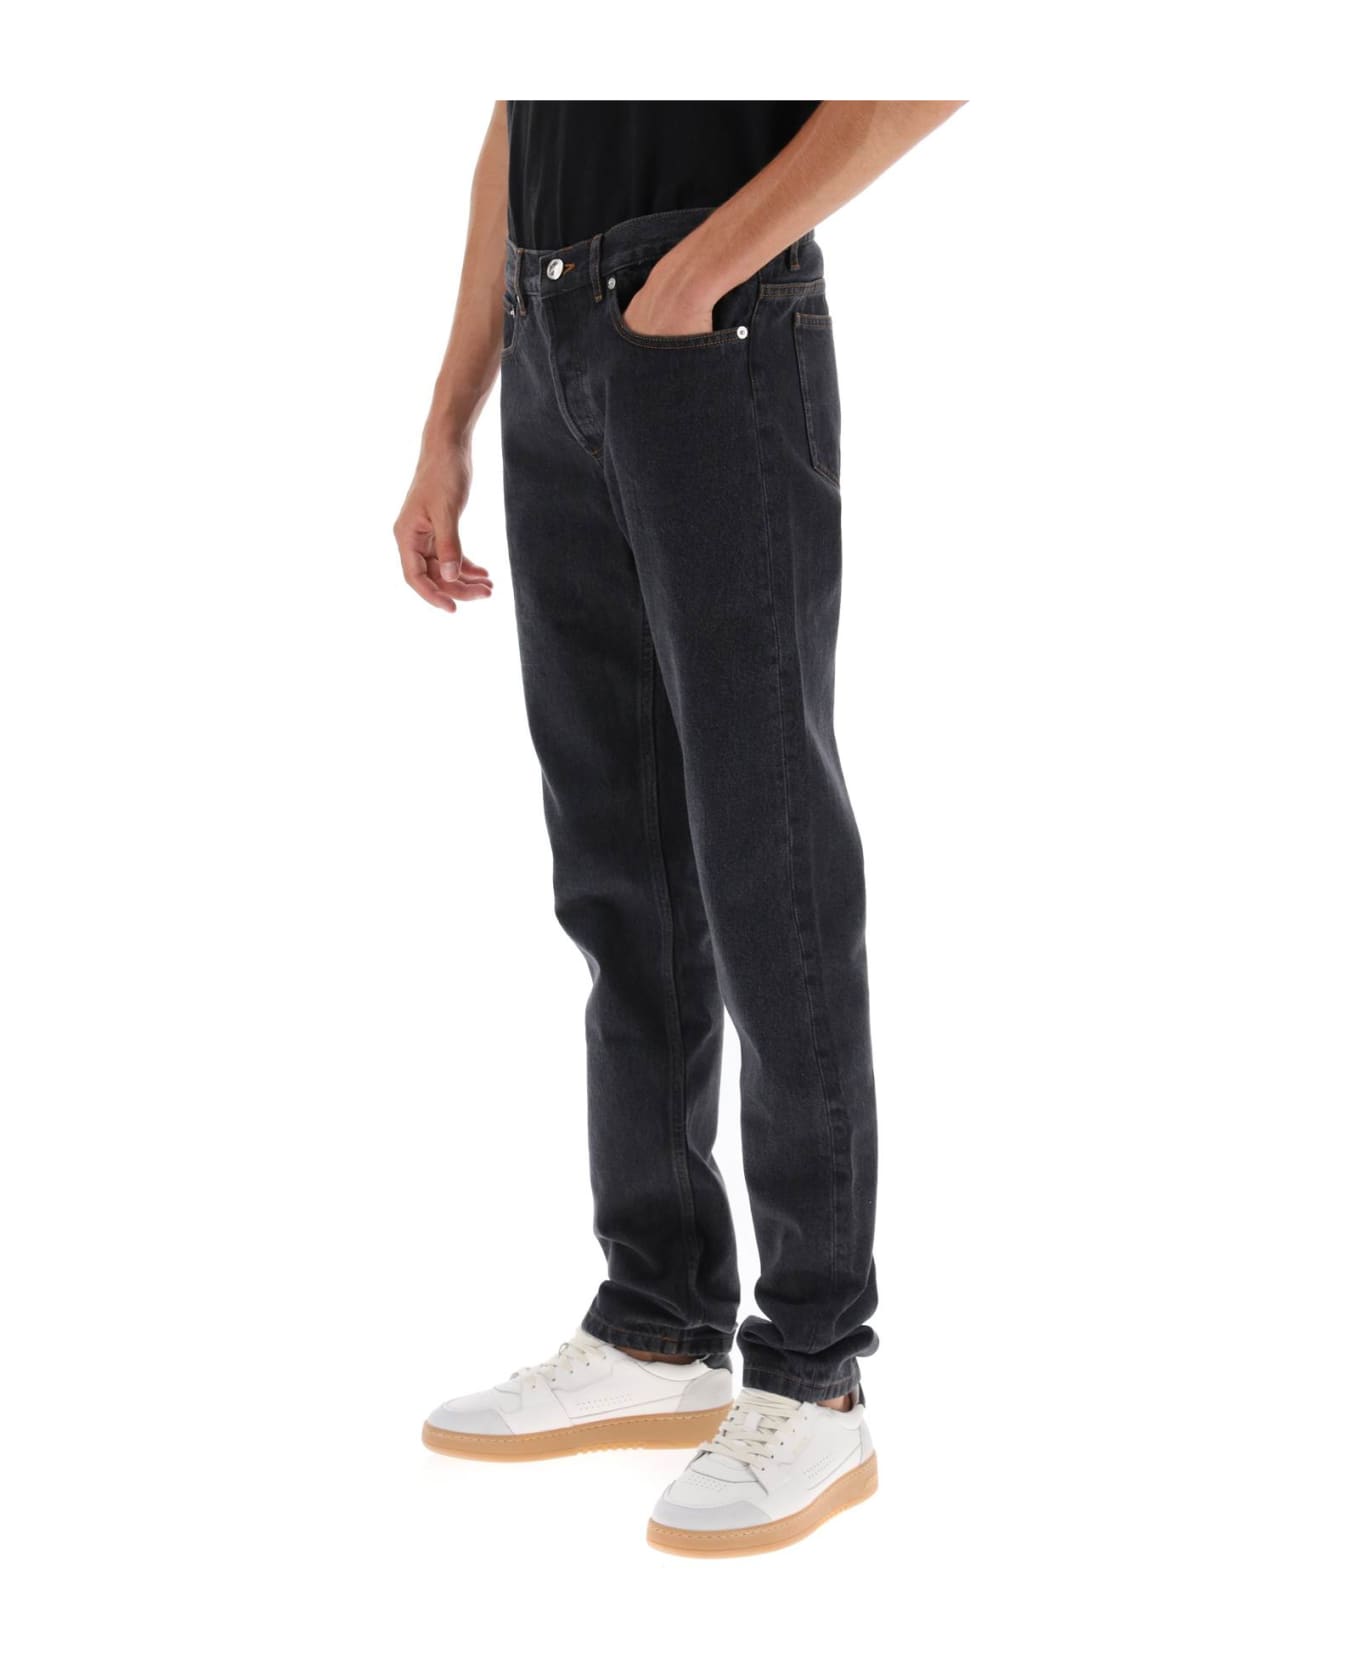 A.P.C. Petit New Standard Jeans - NOIR DELAVE (Black) デニム